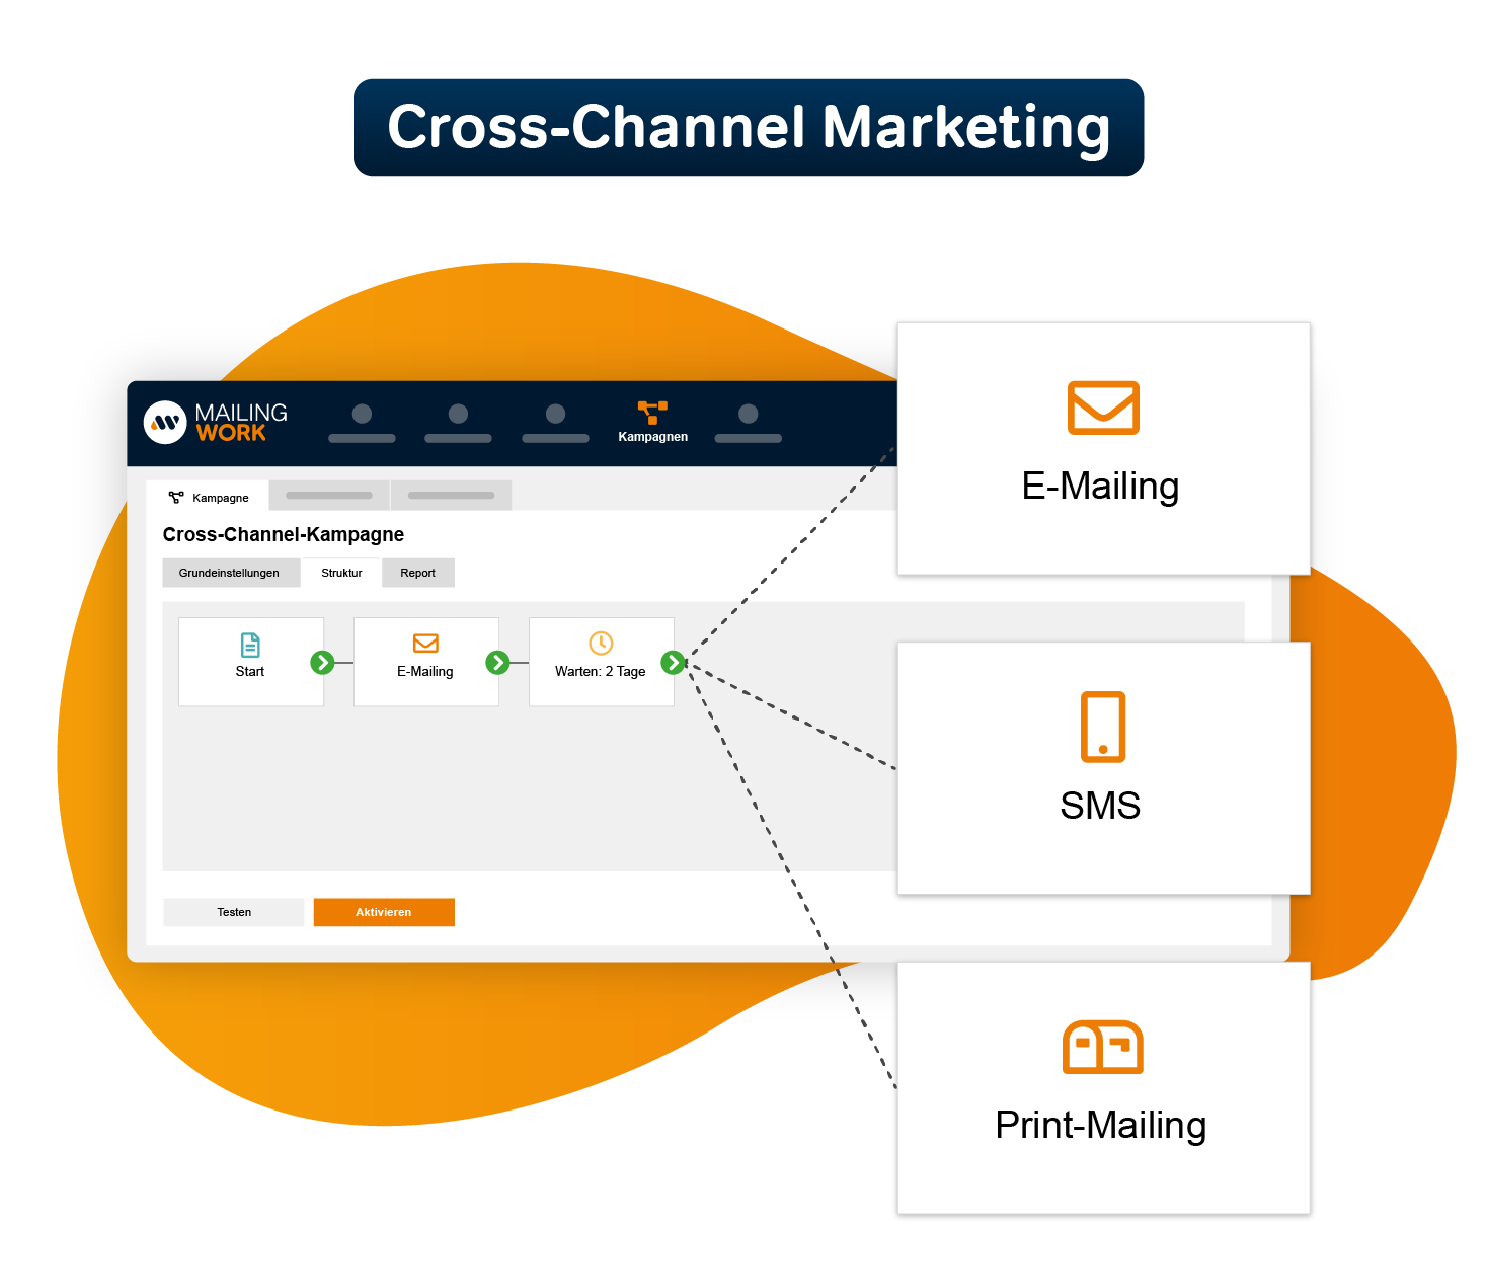 Cross-Channel Marketing
Enhanced brand impact through the combination of different channels

Cross-Channel Marketing
Gesteigerte Markenwirkung durch die Kombination unterschiedlicher Kanäle